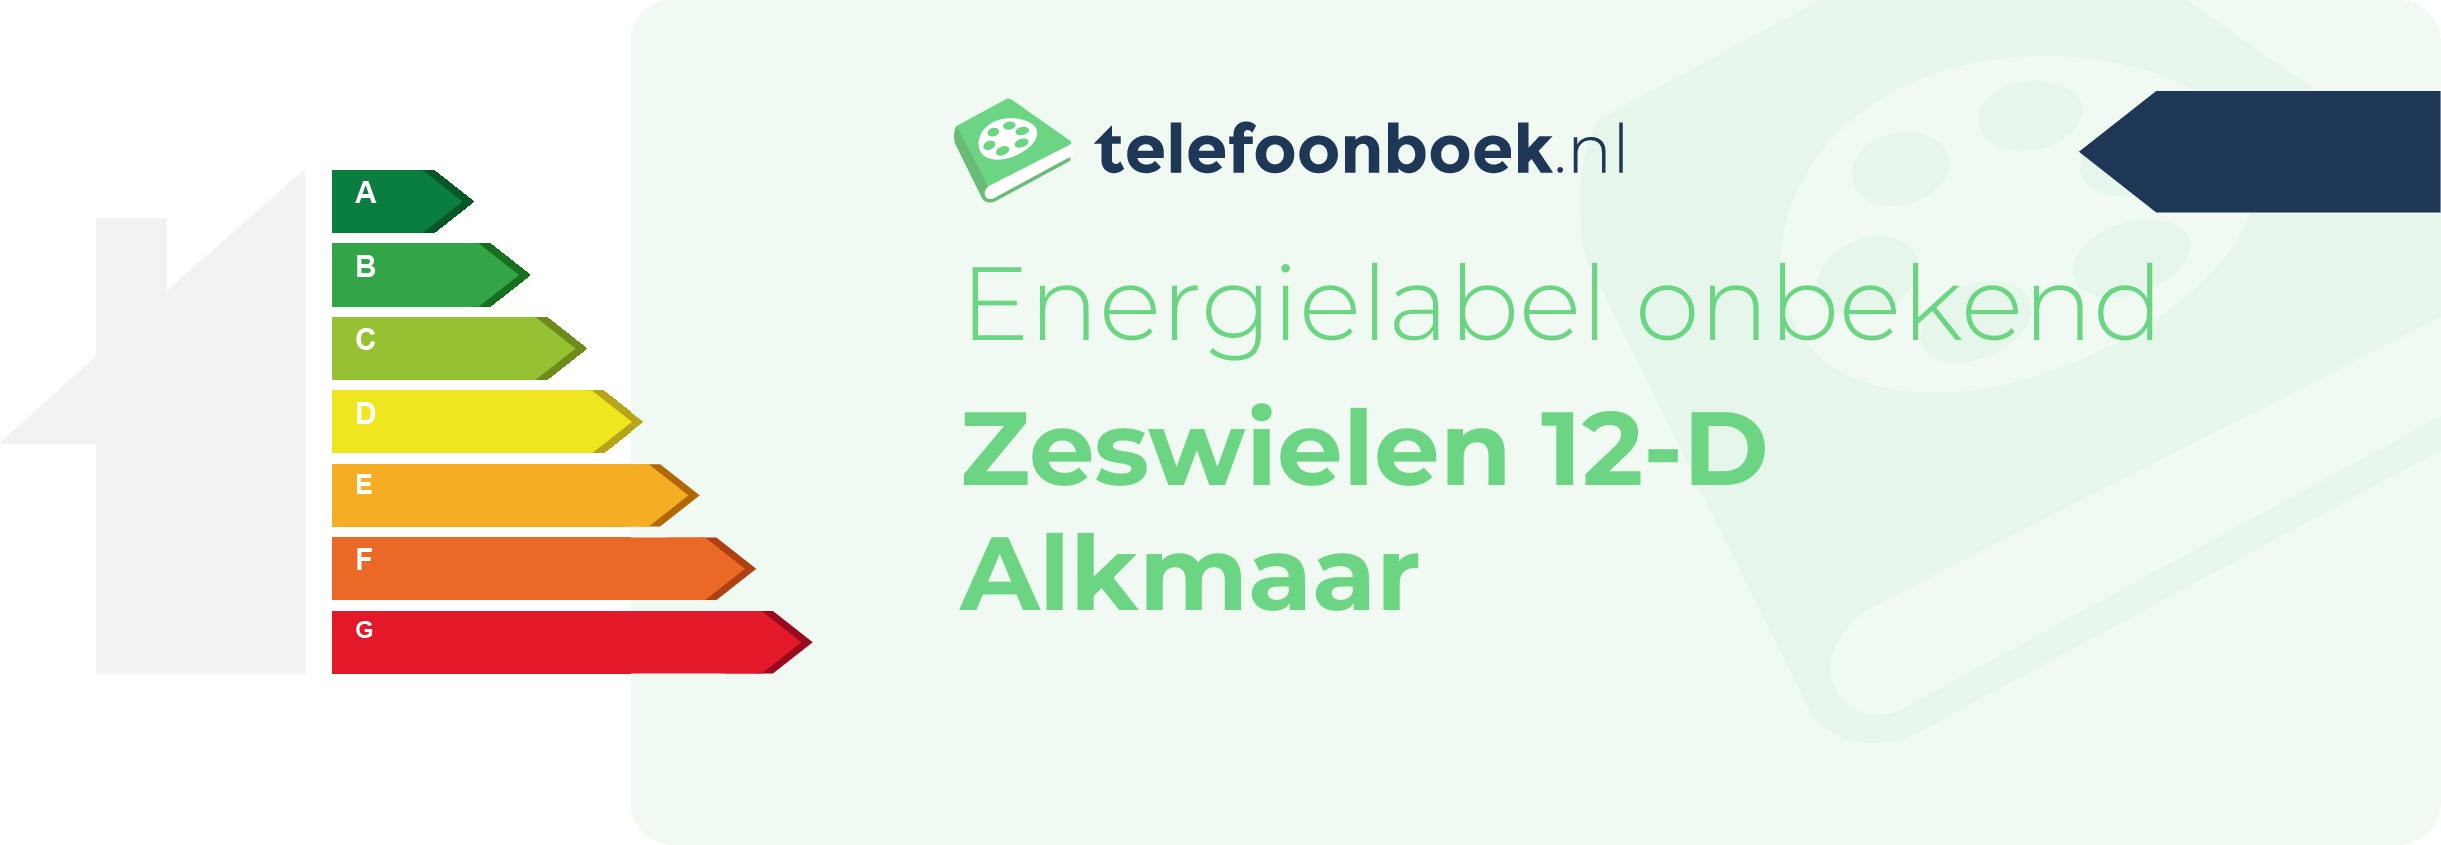 Energielabel Zeswielen 12-D Alkmaar